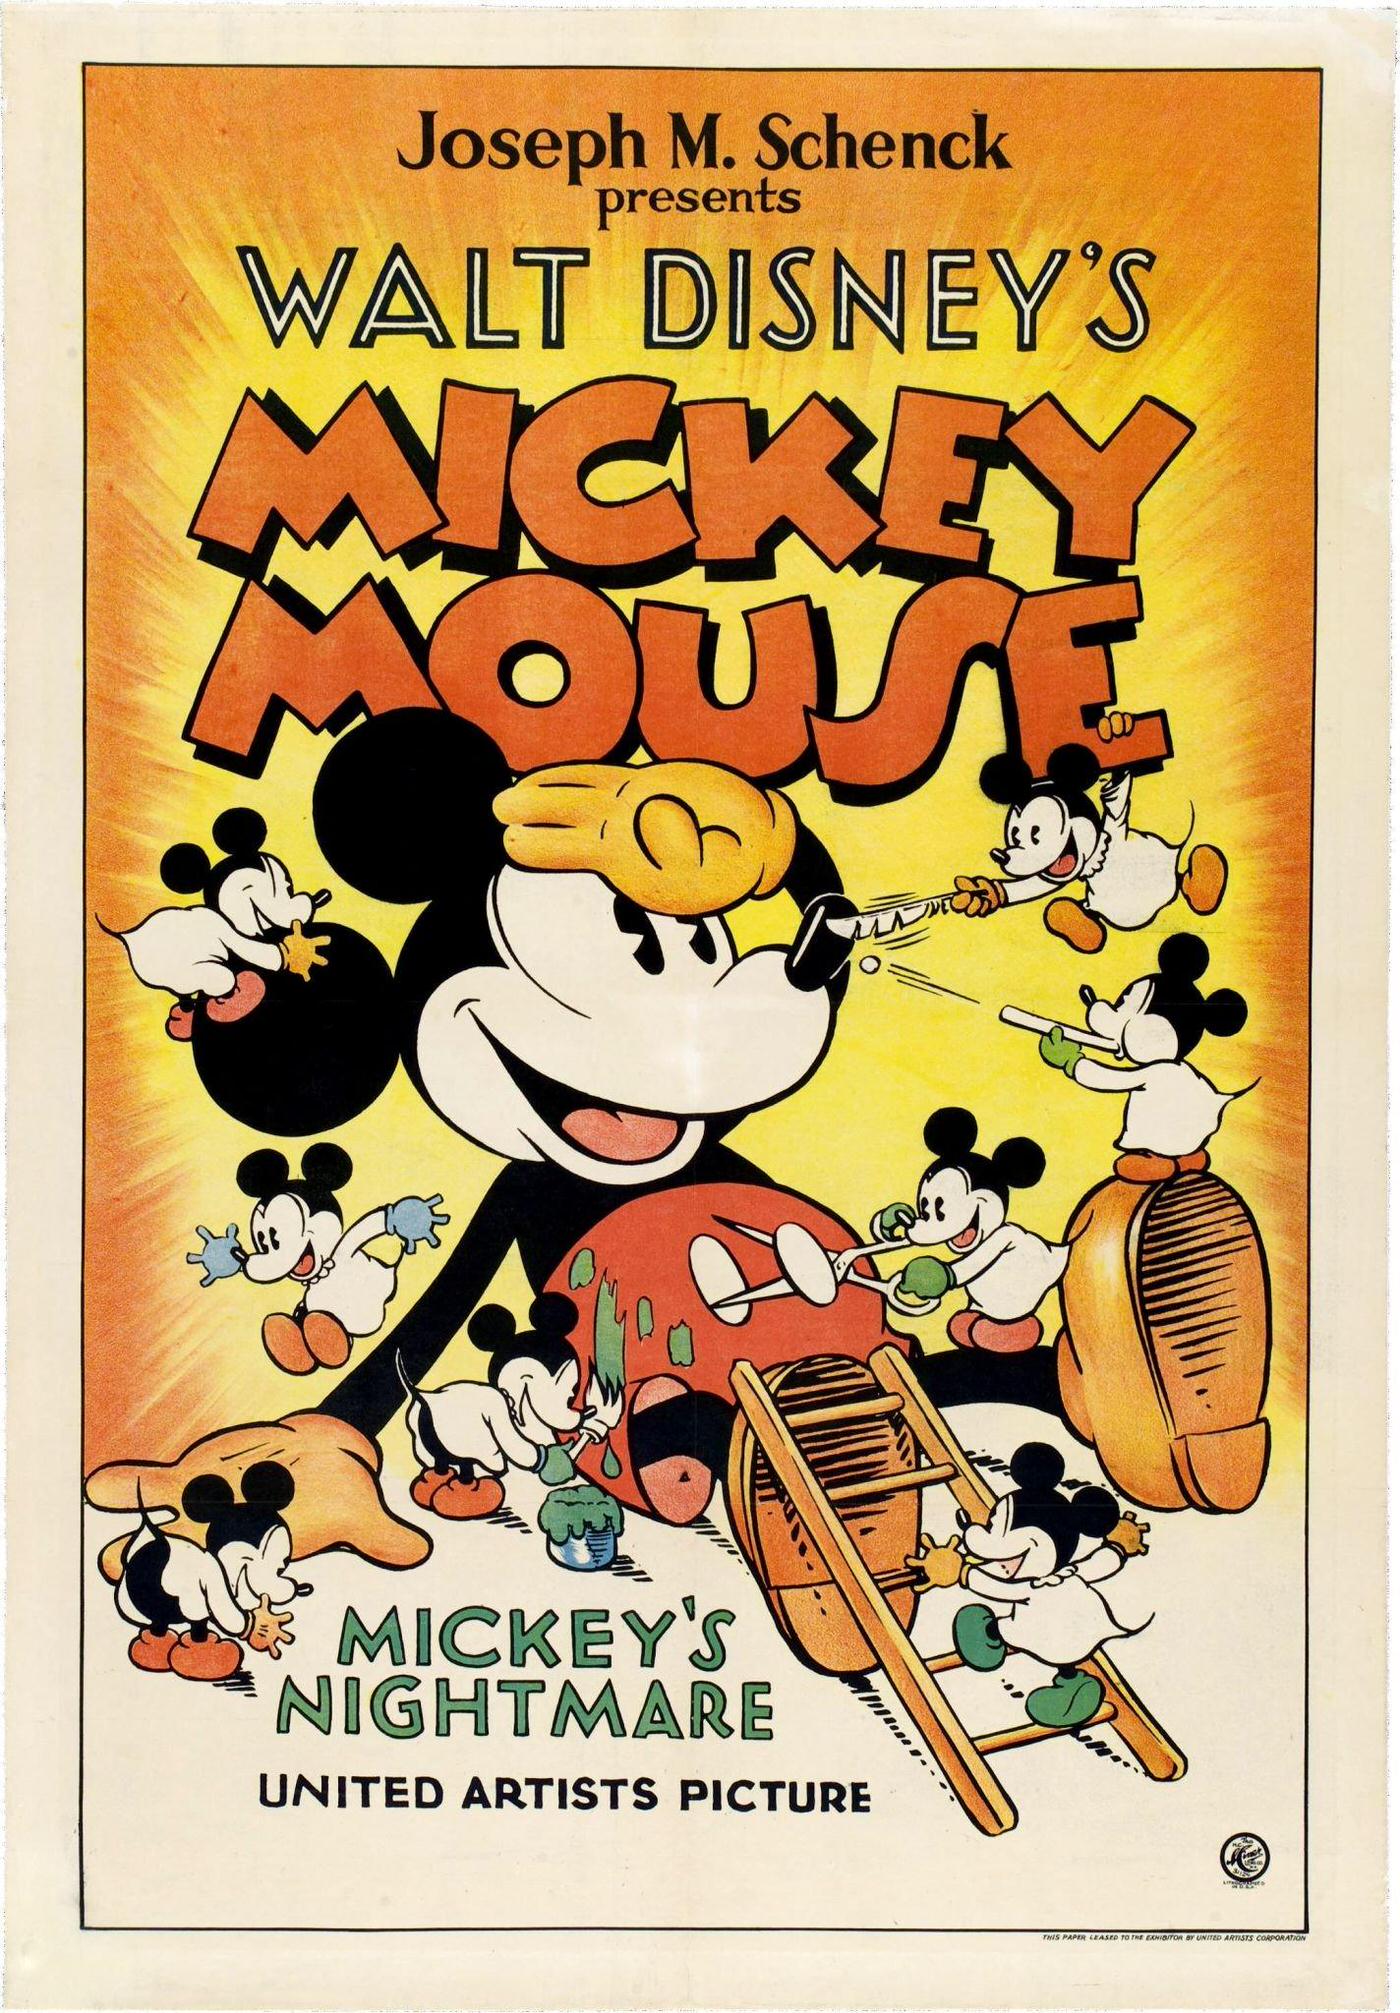 Mickey's Nightmare, 1932.